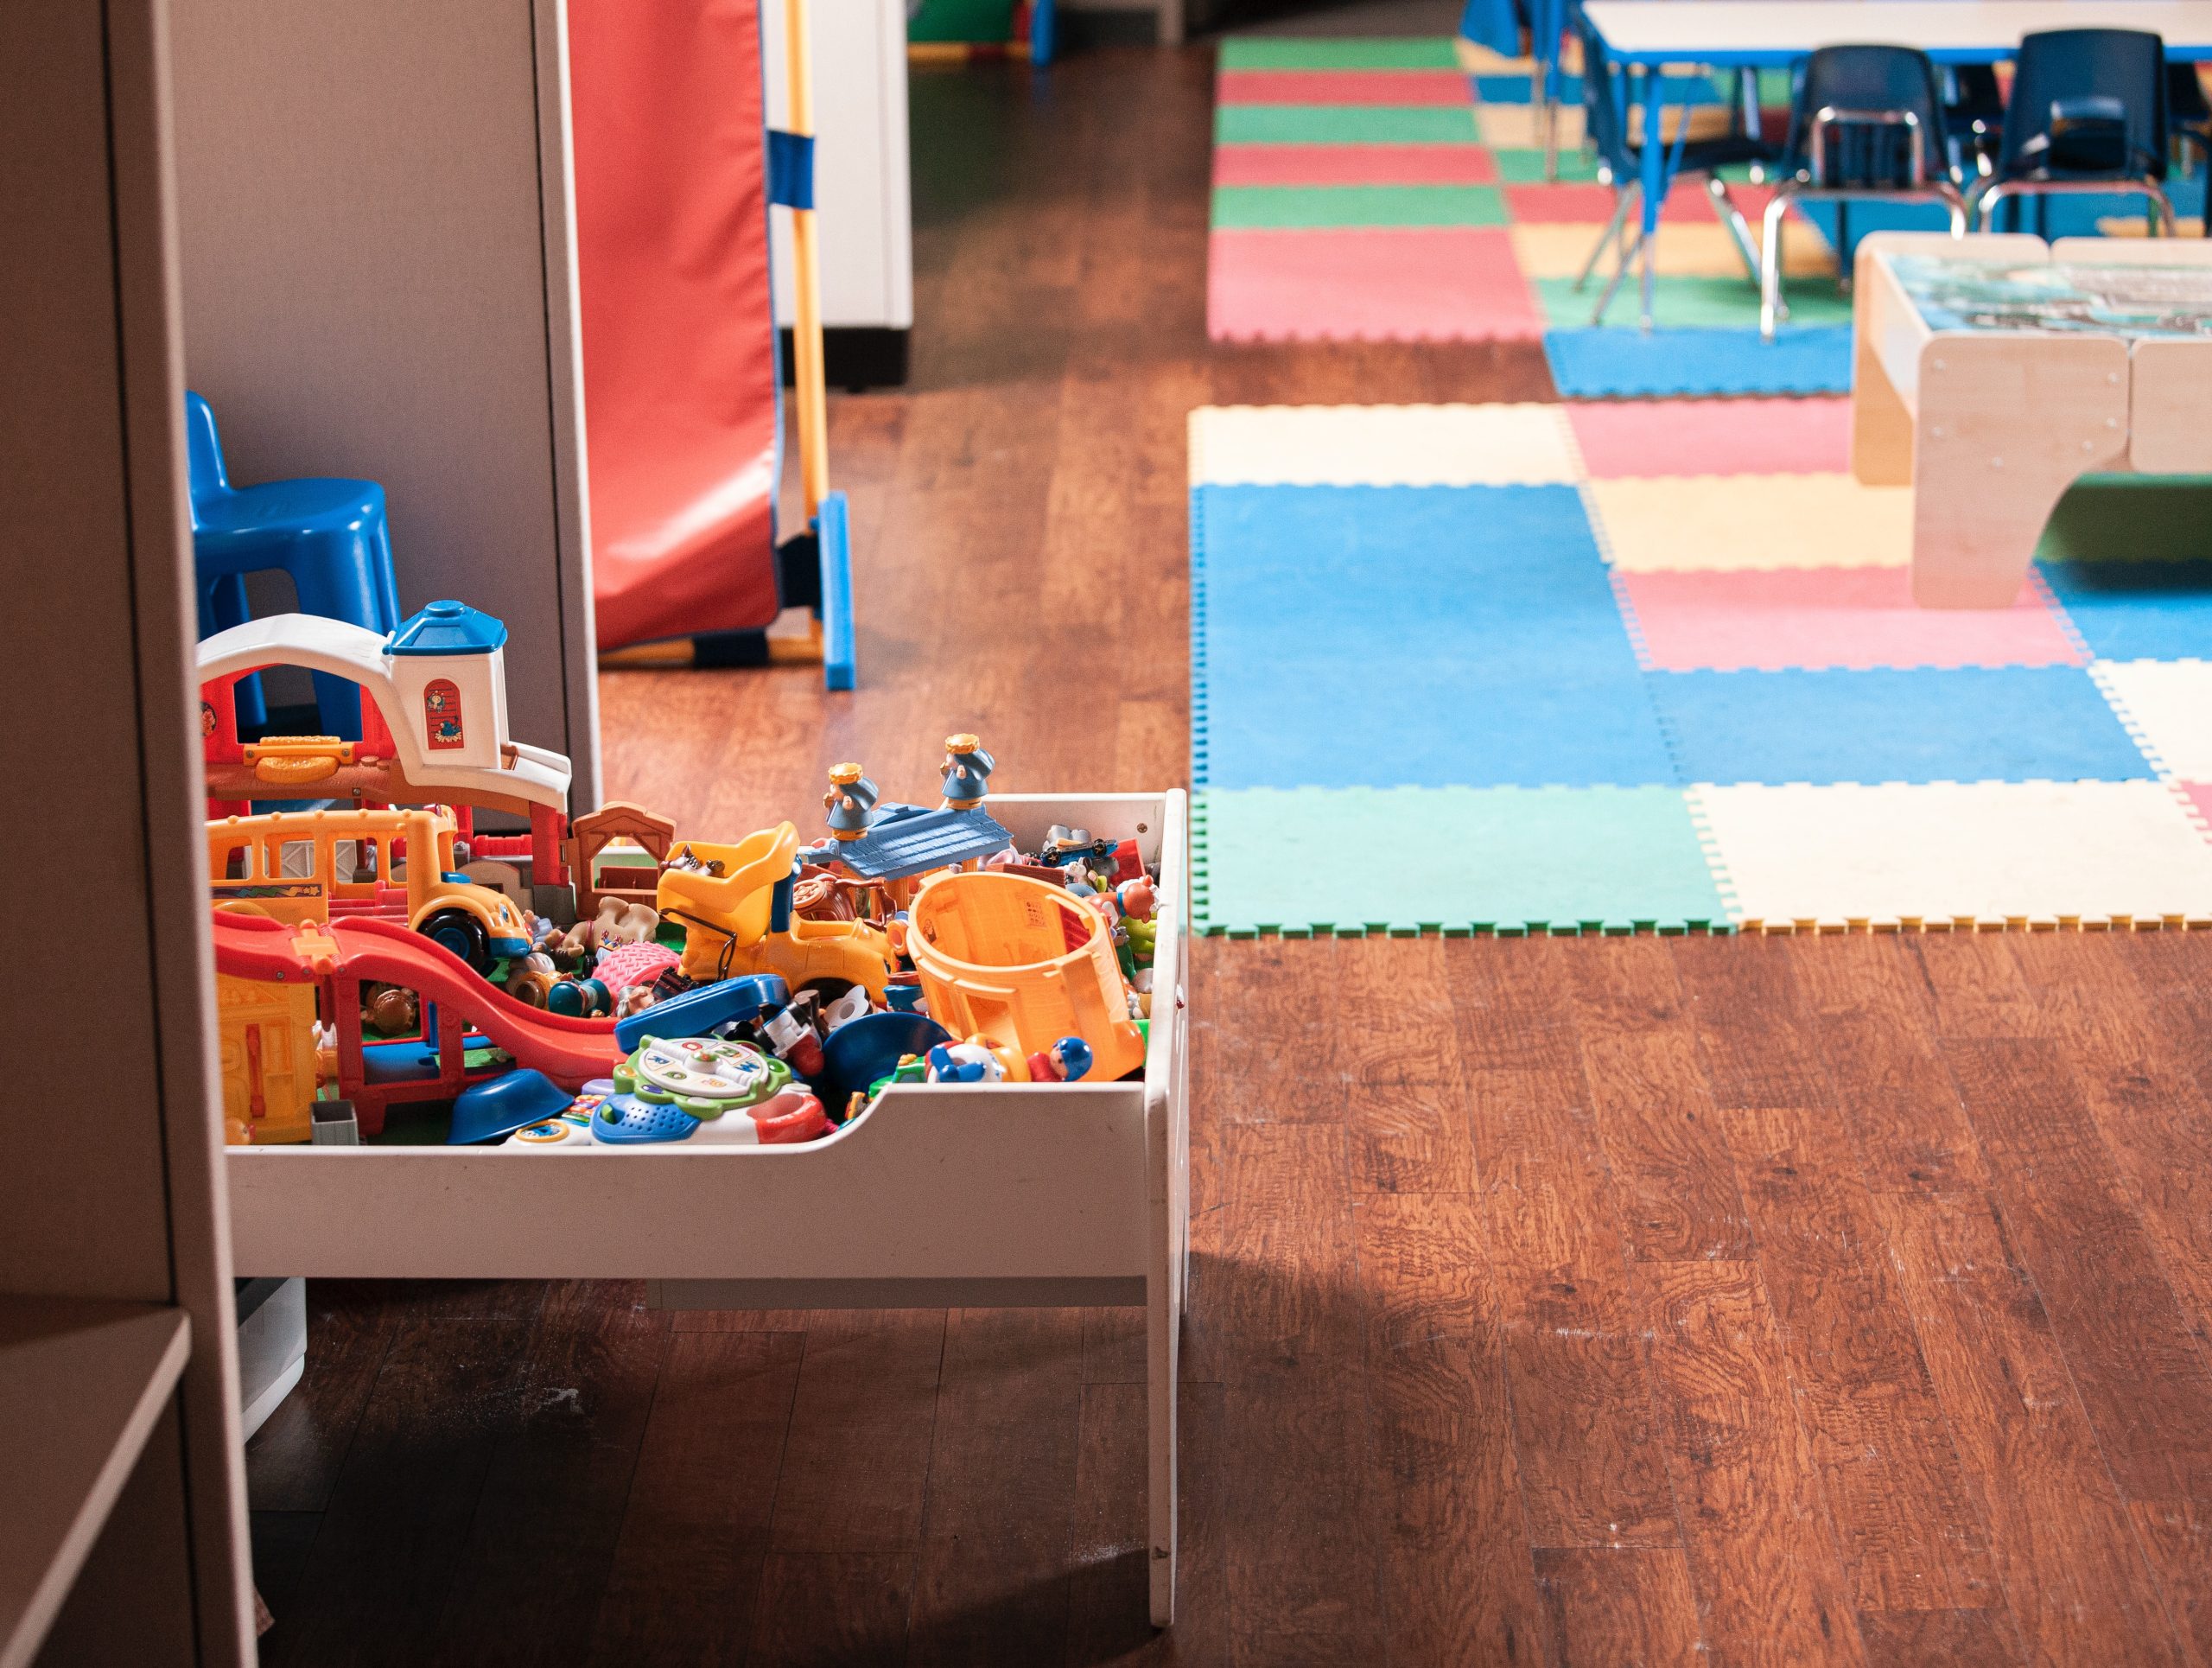 Wewnętrzne place zabaw: Przestrzeń pełna radości i nauki dla dzieci